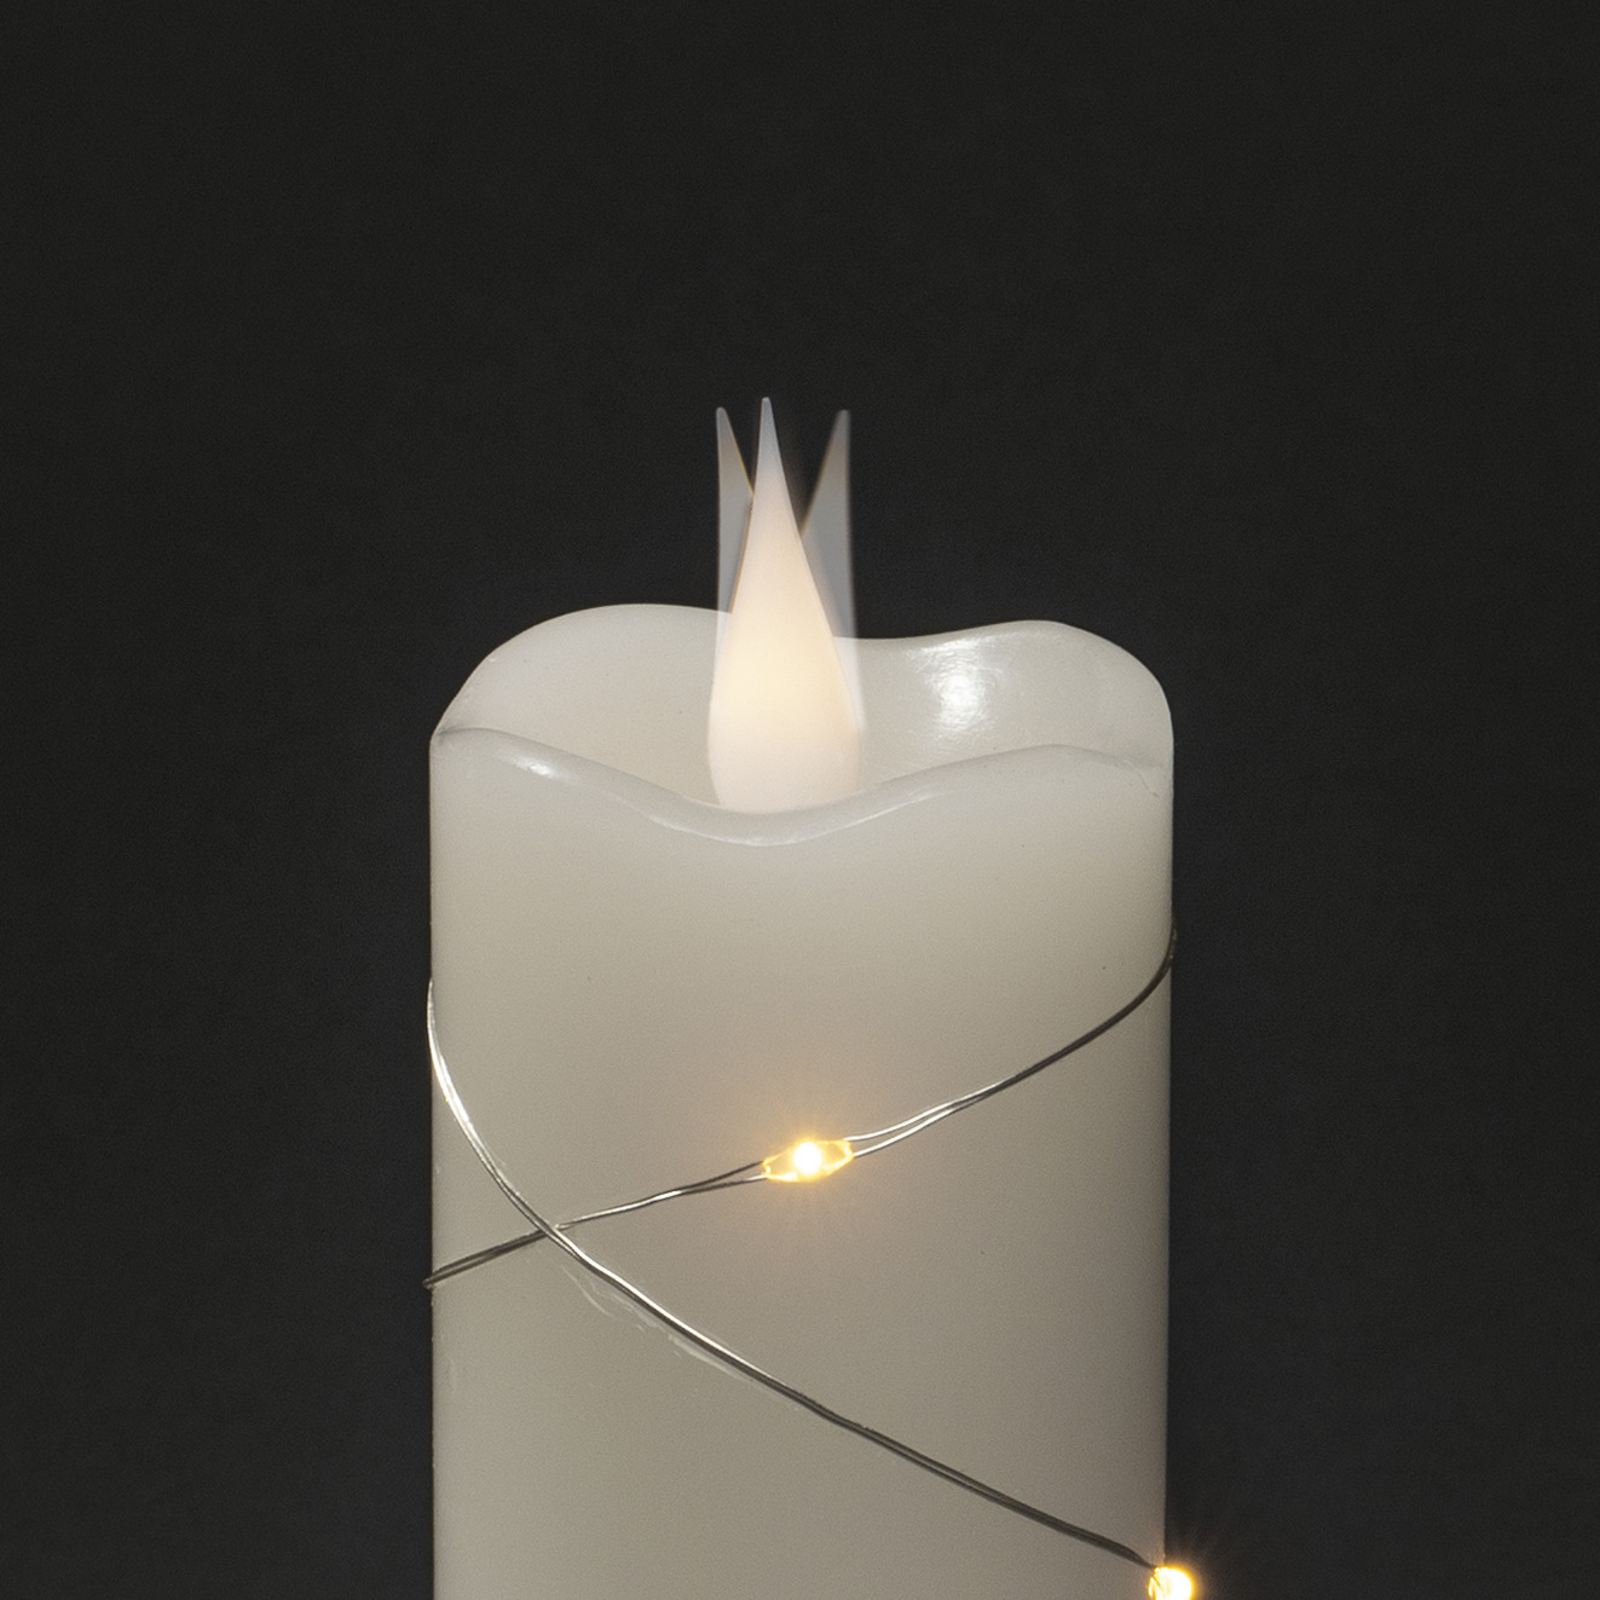 Vela de cera LED blanca Color de la luz blanco cálido 17,8 cm